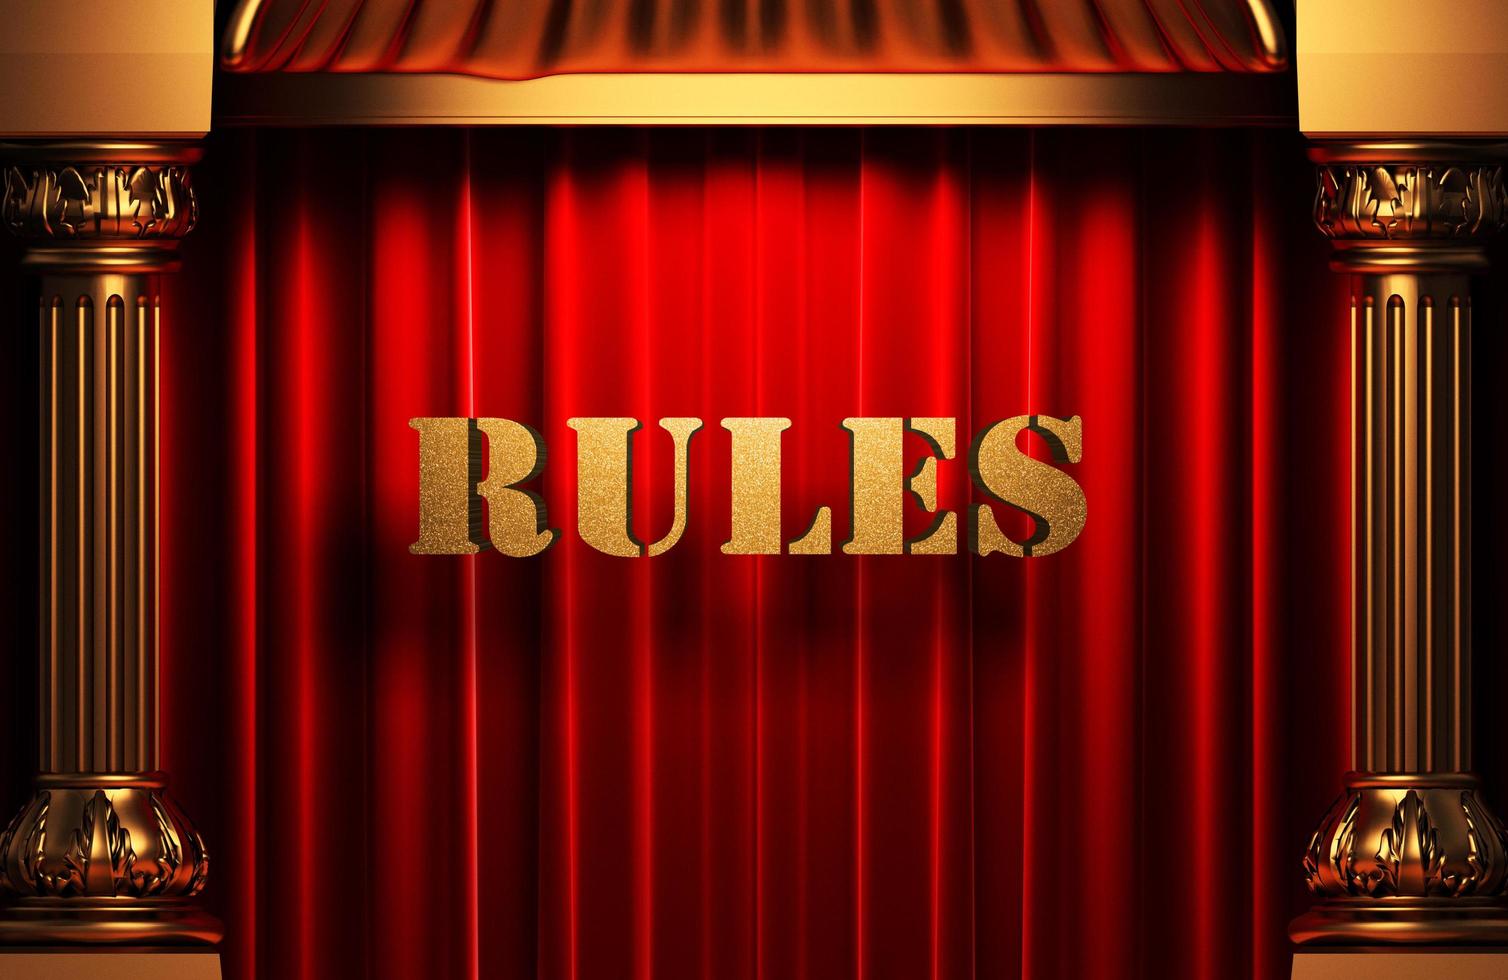 regras palavra dourada na cortina vermelha foto